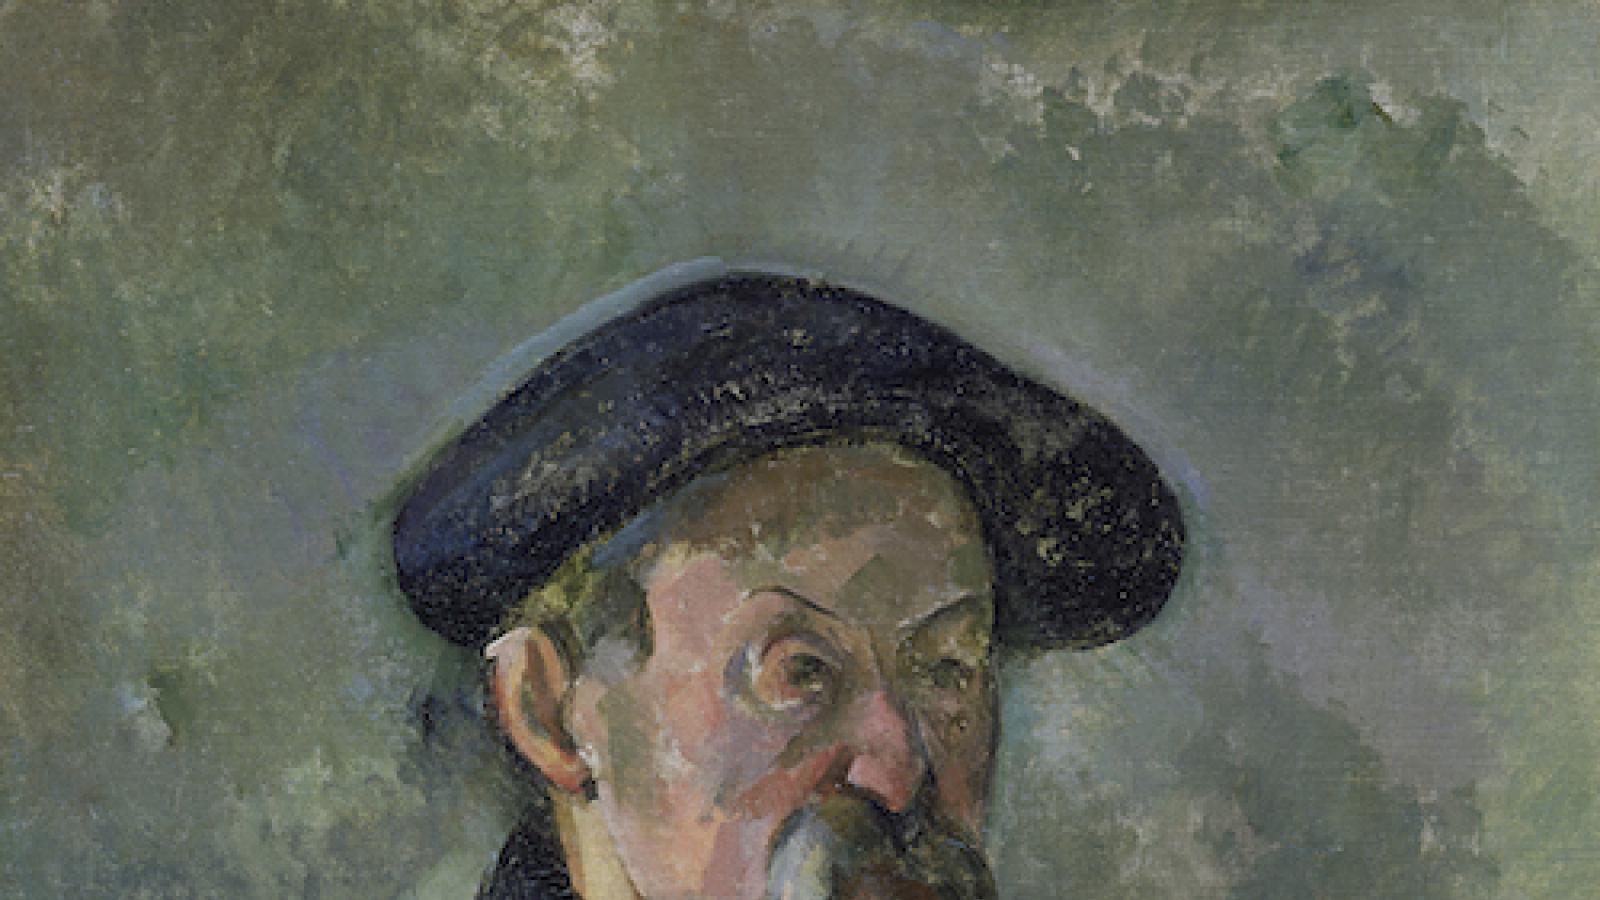 self portrait of the artist Paul Cezanne as an older man wearing a beret